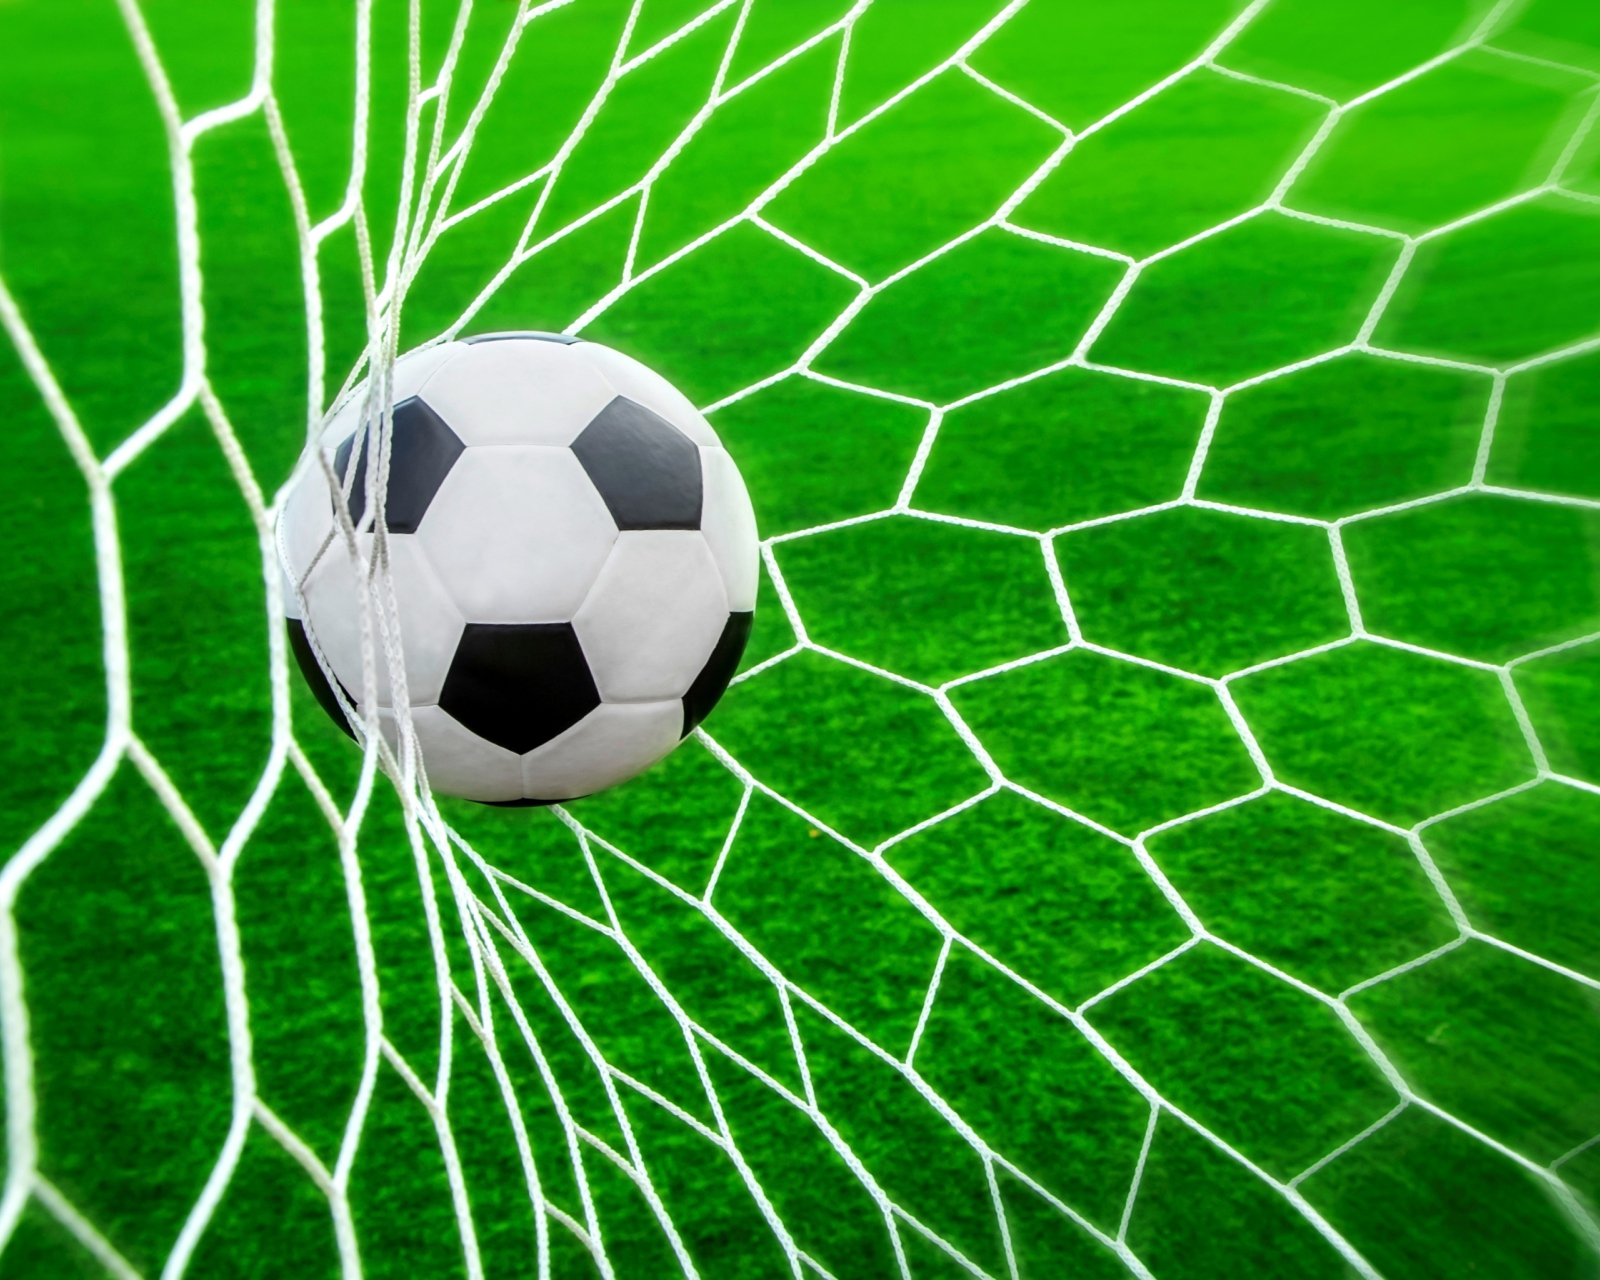 Ball In Goal Net wallpaper 1600x1280